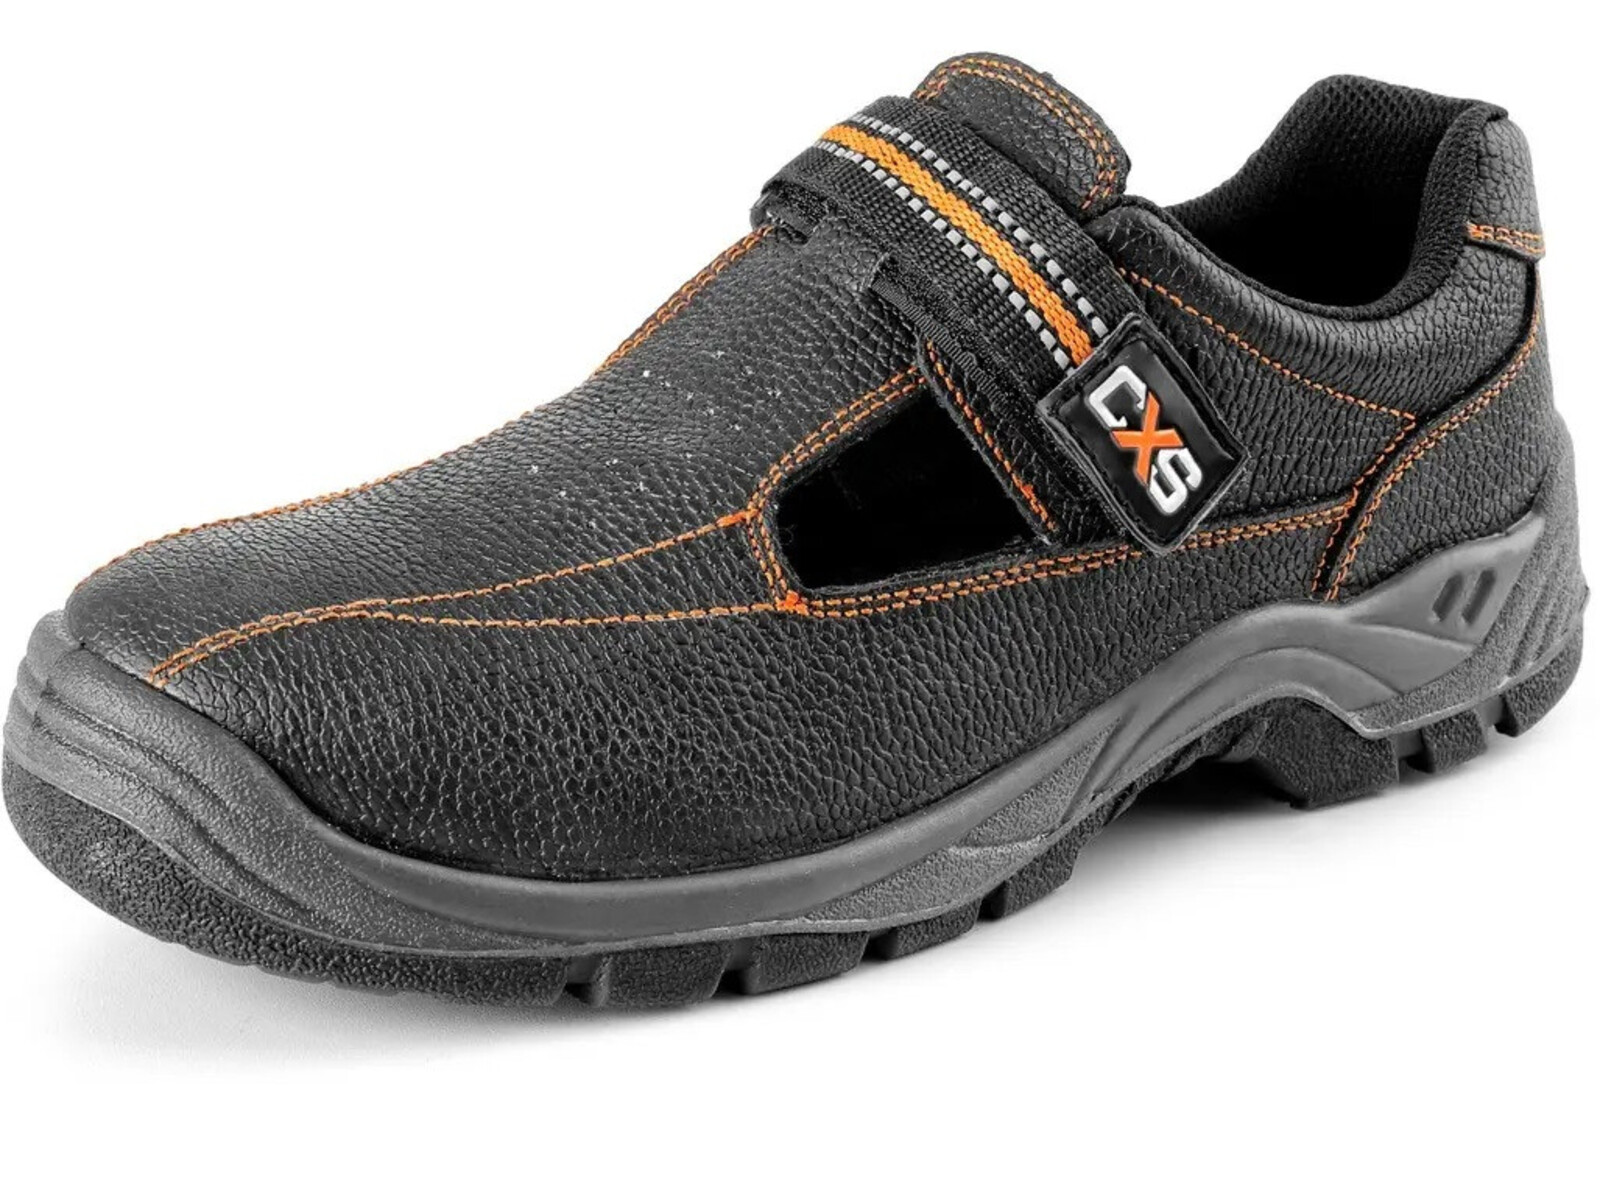 Pracovné sandále CXS Stone Nefrit O1 FO SRC - veľkosť: 40, farba: čierna/oranžová